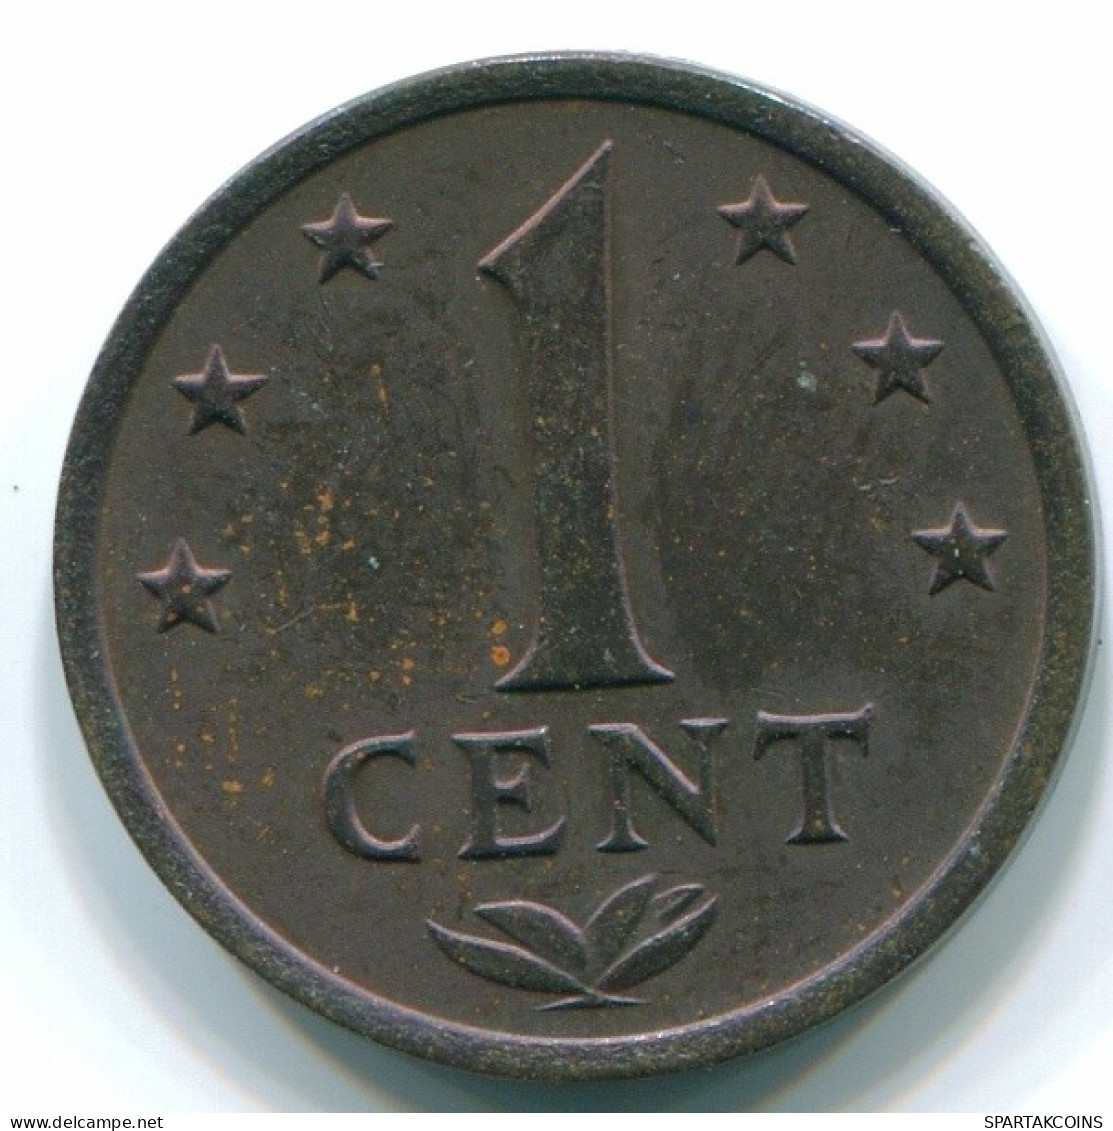 1 CENT 1975 NIEDERLÄNDISCHE ANTILLEN Bronze Koloniale Münze #S10674.D.A - Niederländische Antillen